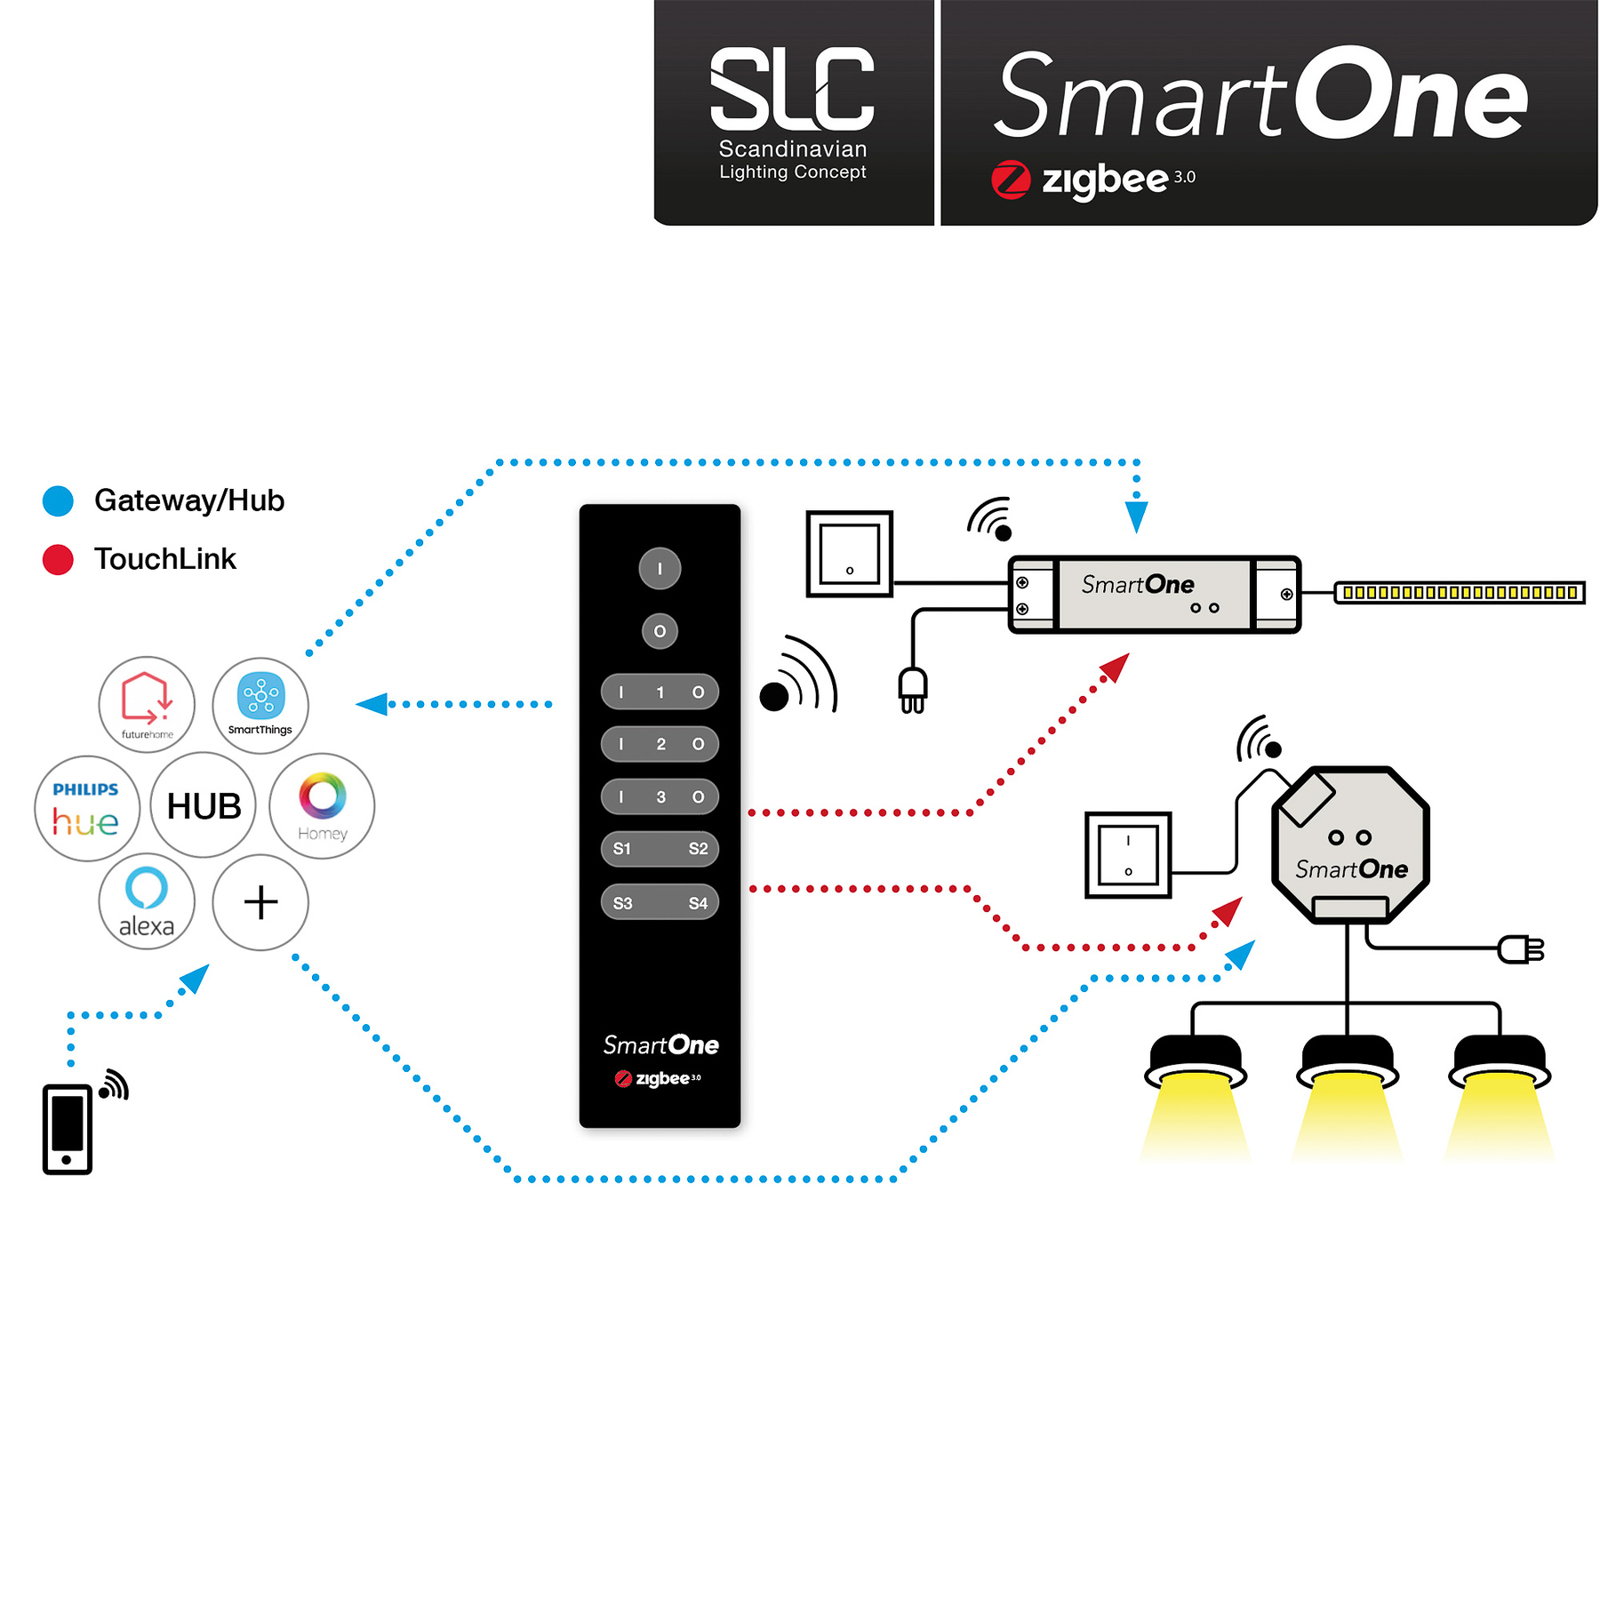 SLC SmartOne ZigBee remote control 3-channel Mono